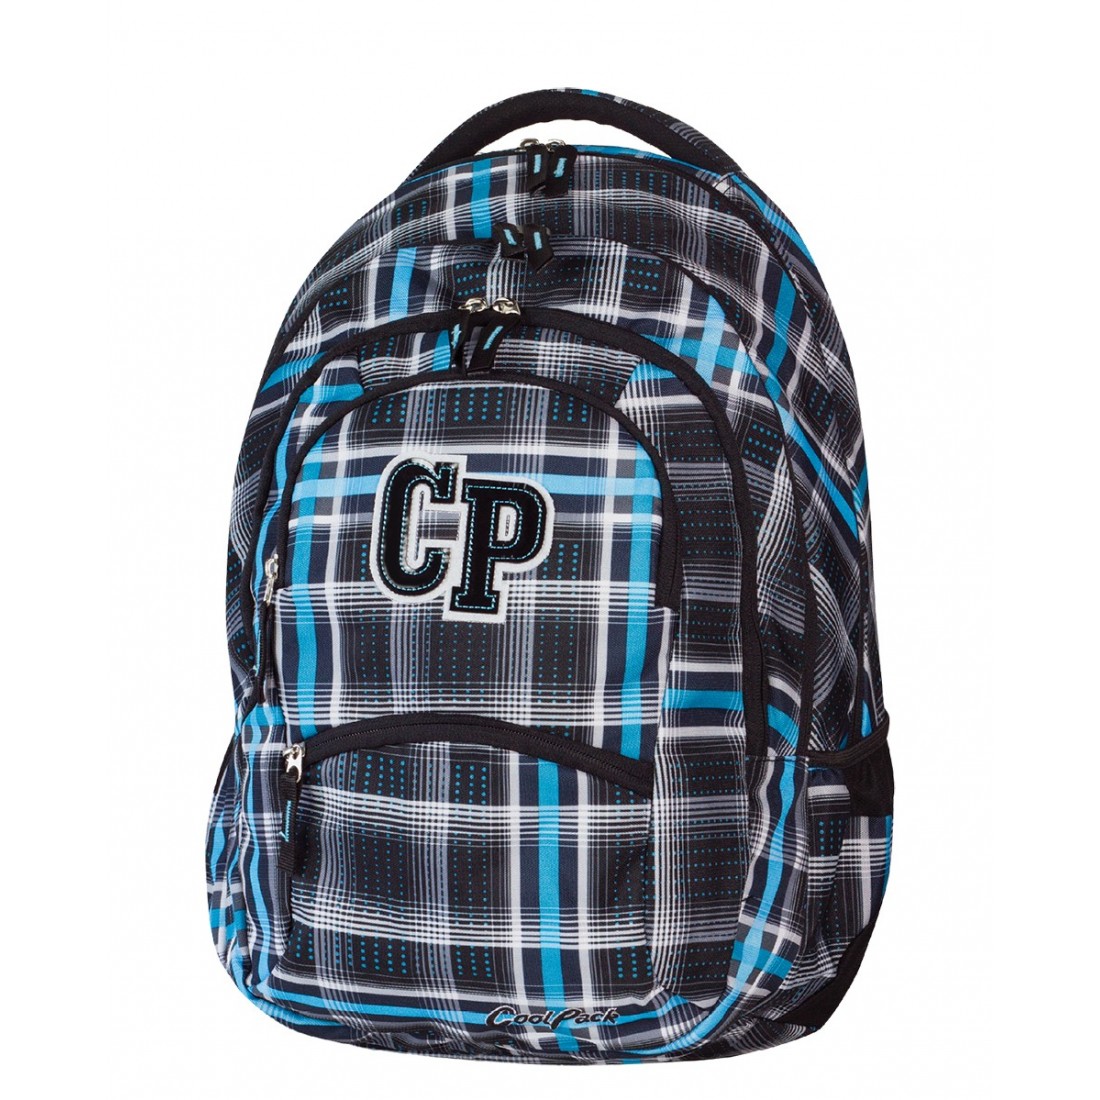 Plecak młodzieżowy CoolPack CP czarny i niebieski w kratkę - 5 przegród COLLEGE SPORTY 448